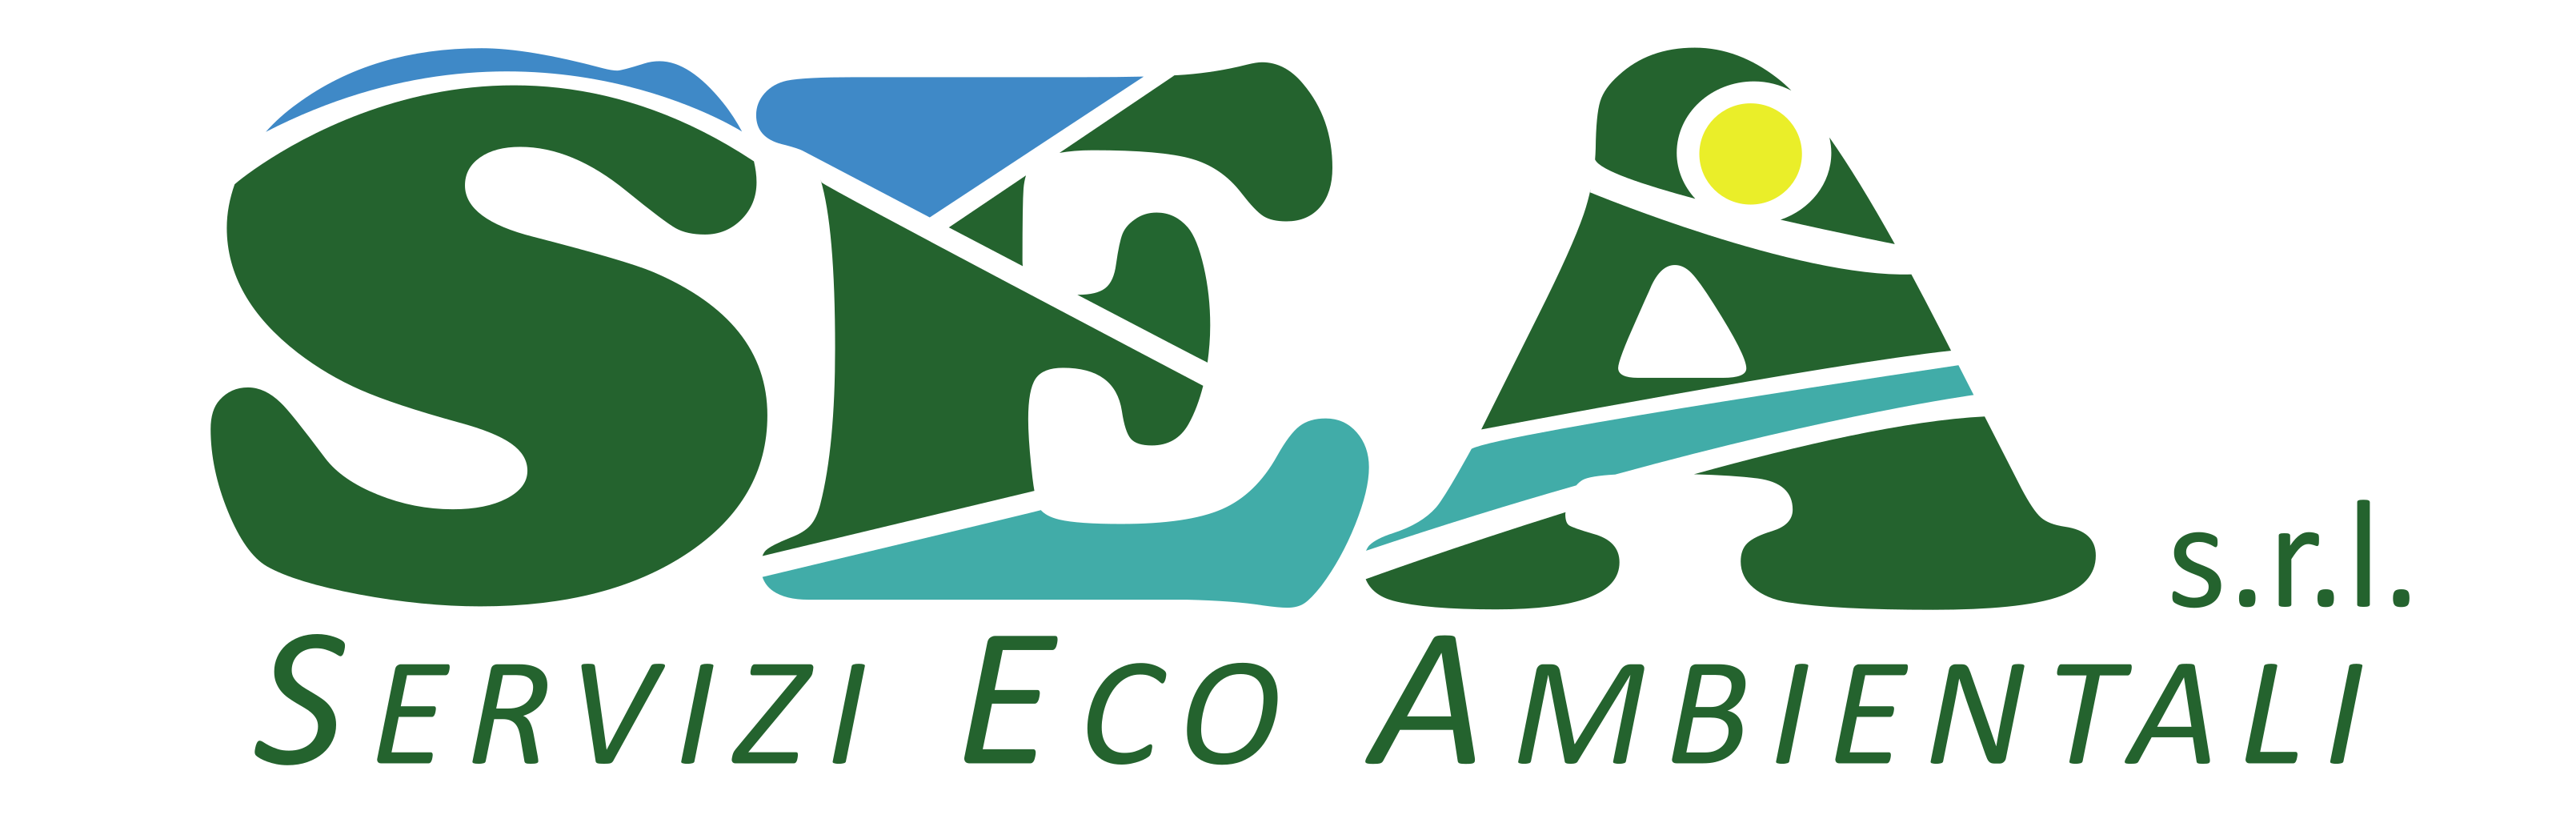 SEA S.r.l. - Servizi Eco Ambientali